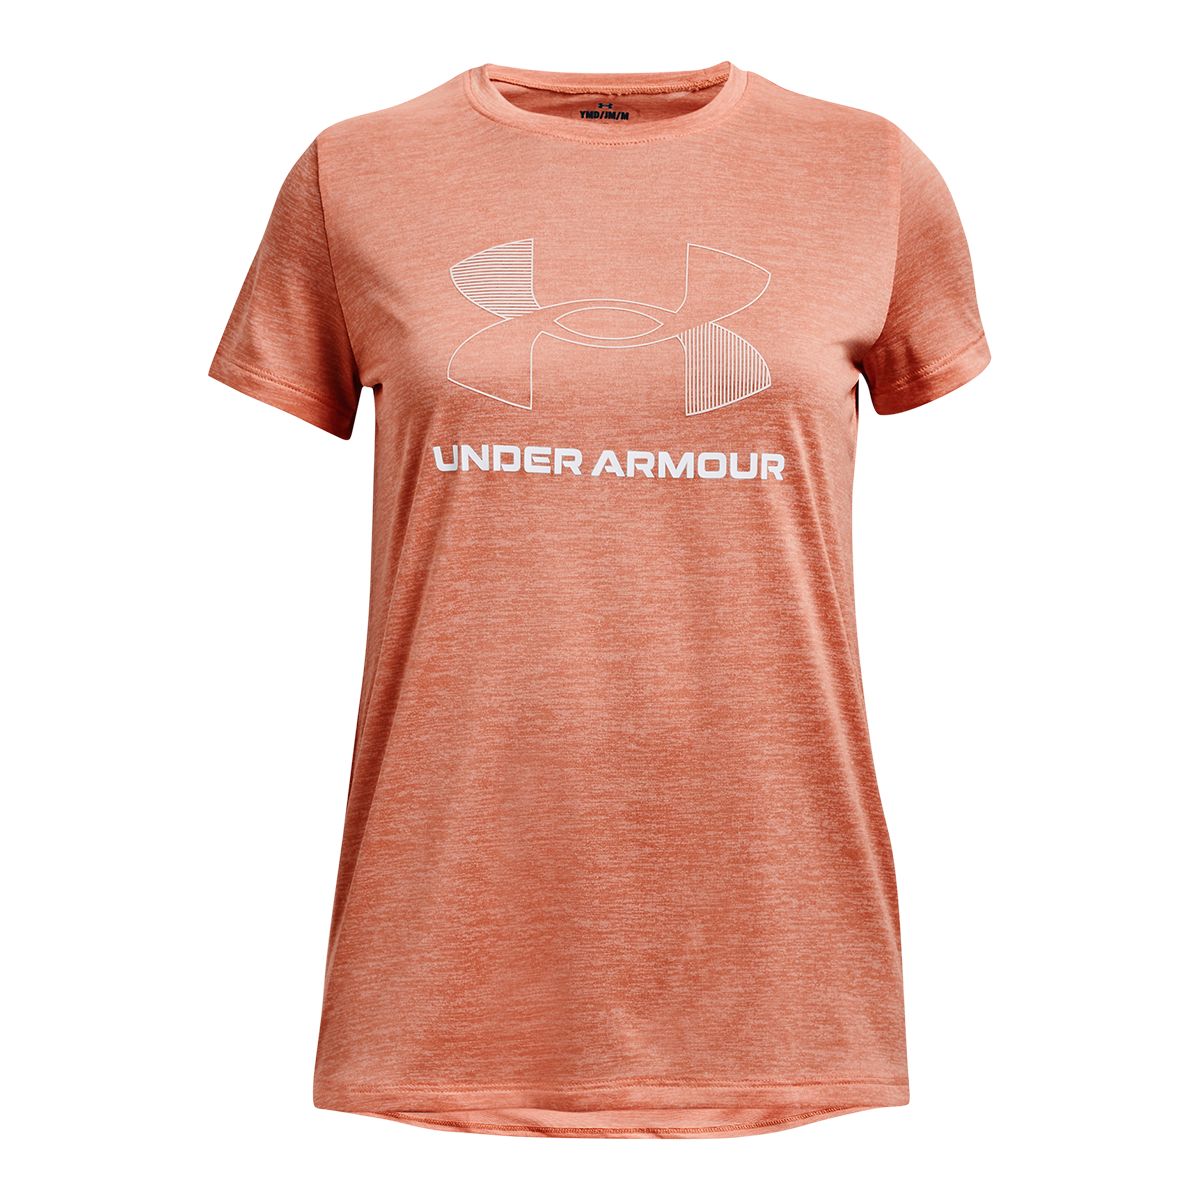 Under Armour Women's Tech SSC Twist T Shirt